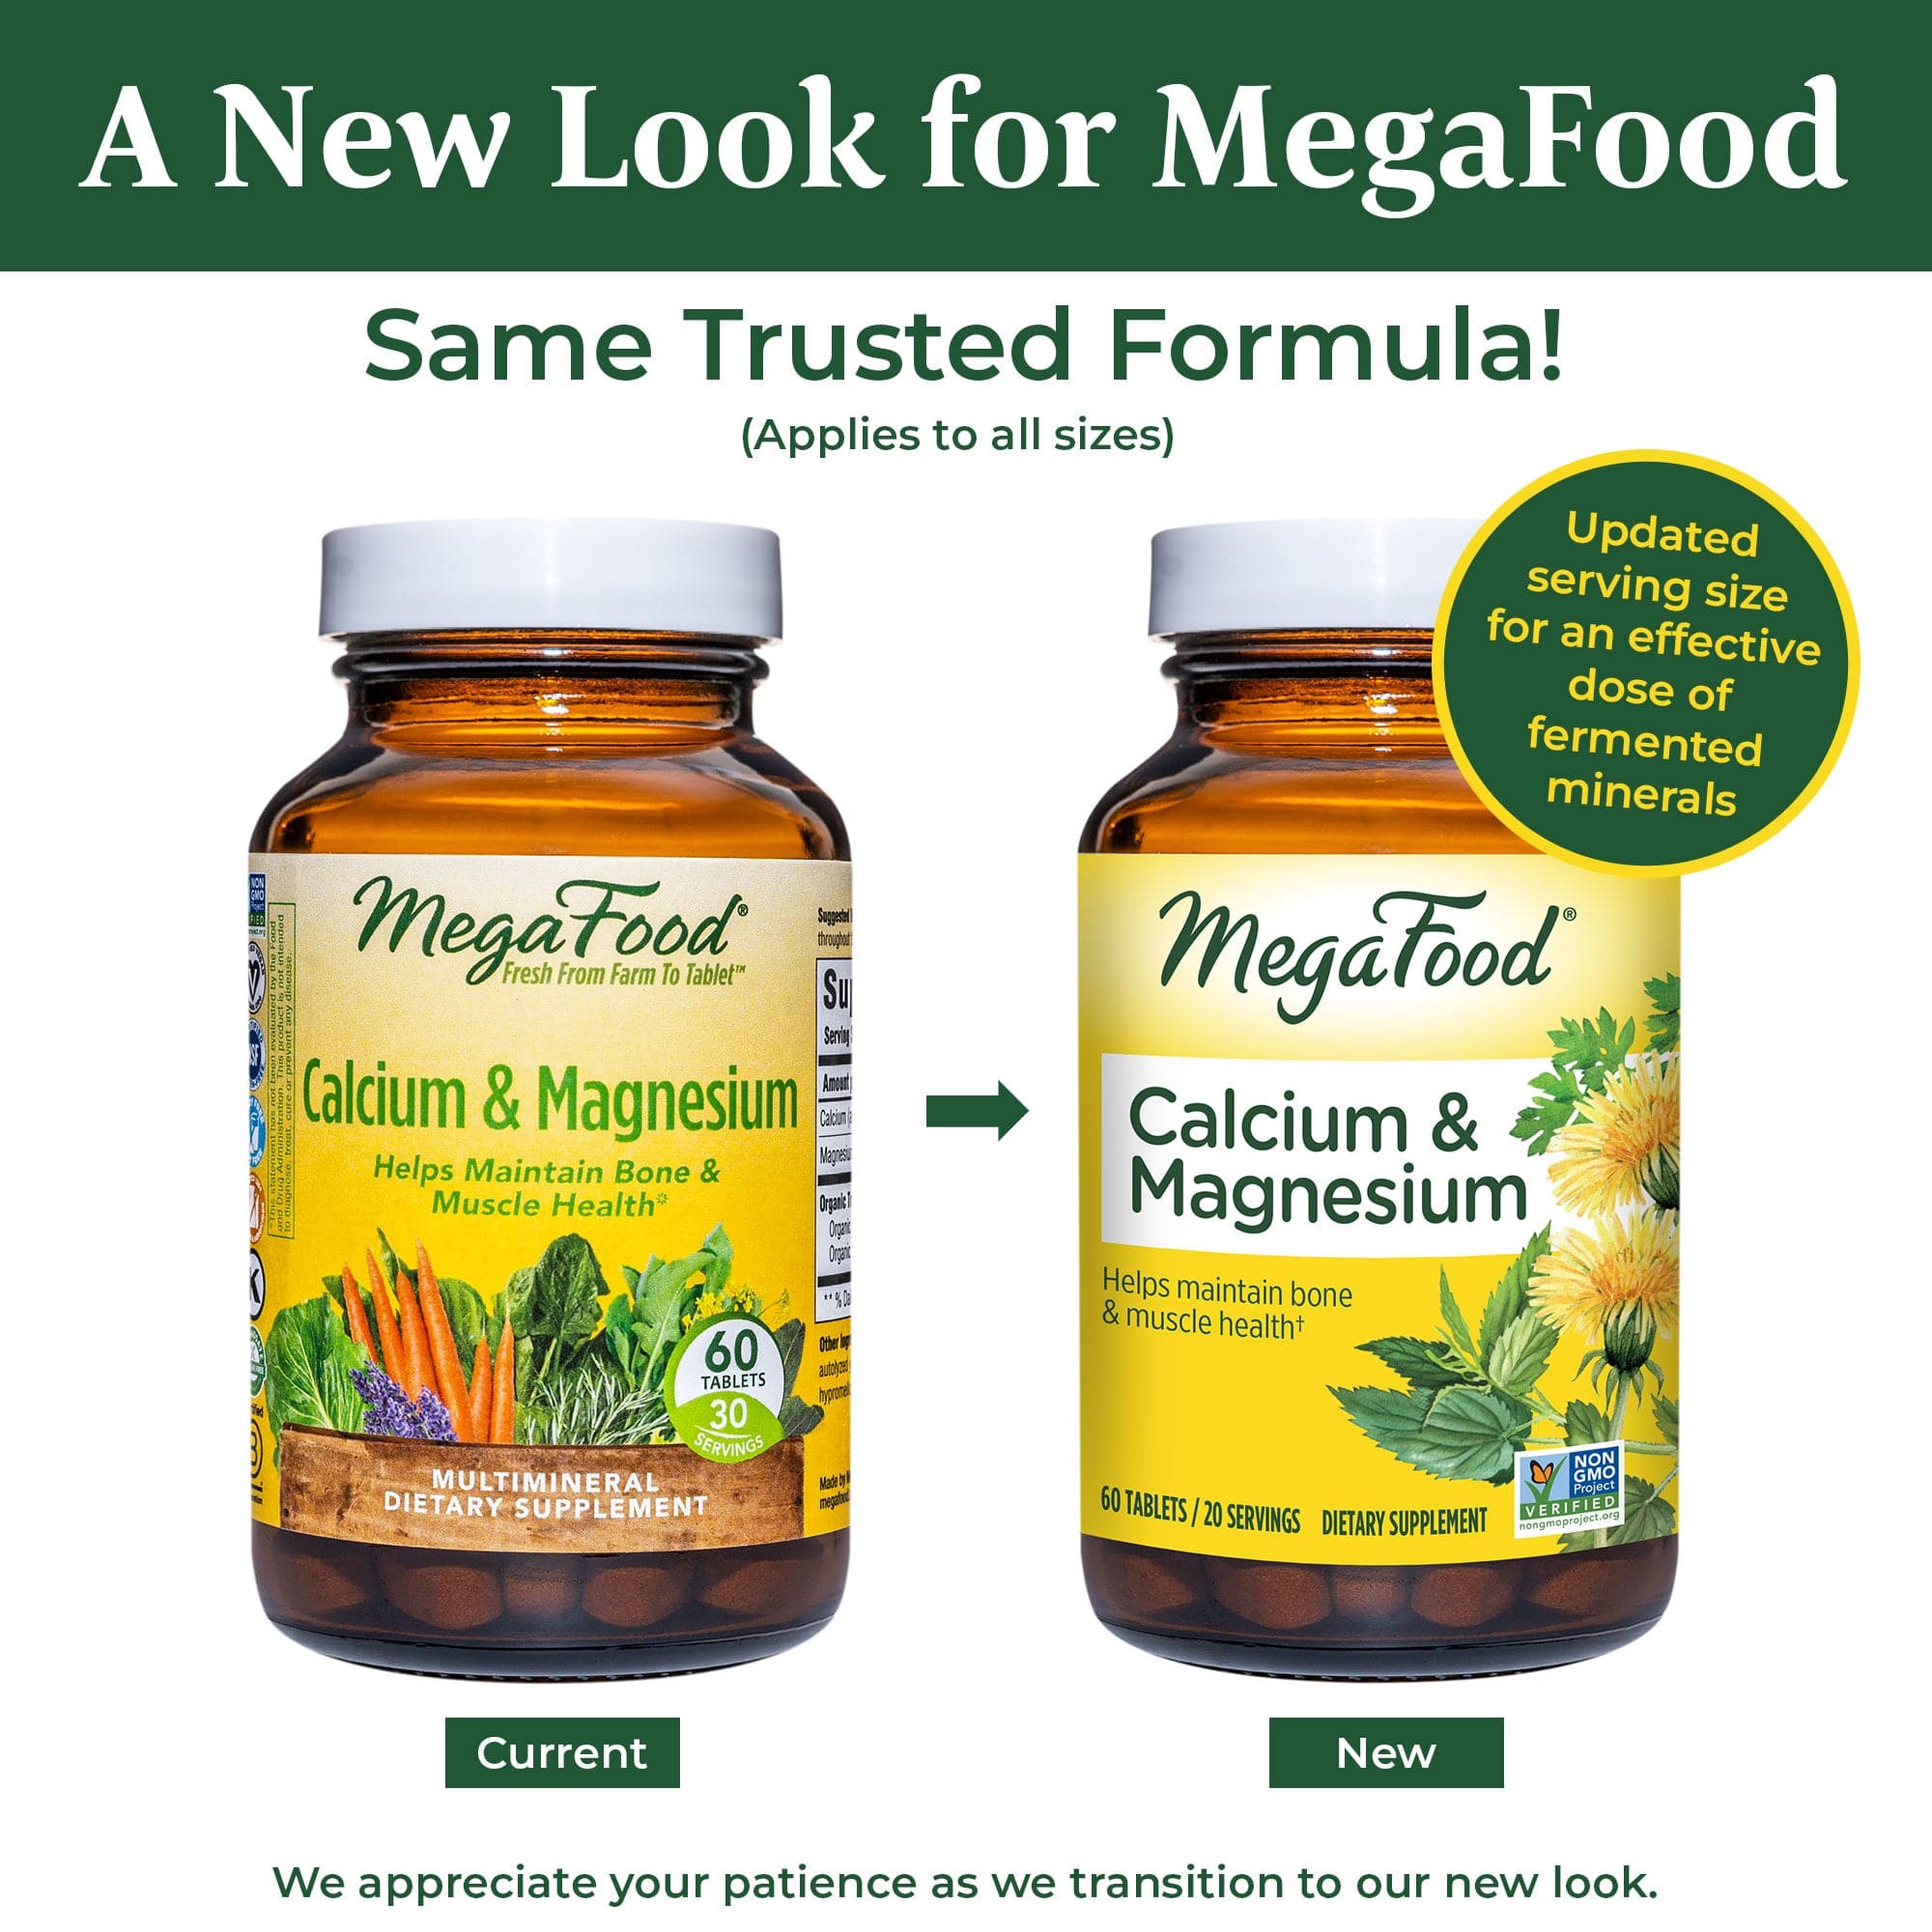 MegaFood Calcium and Magnesium